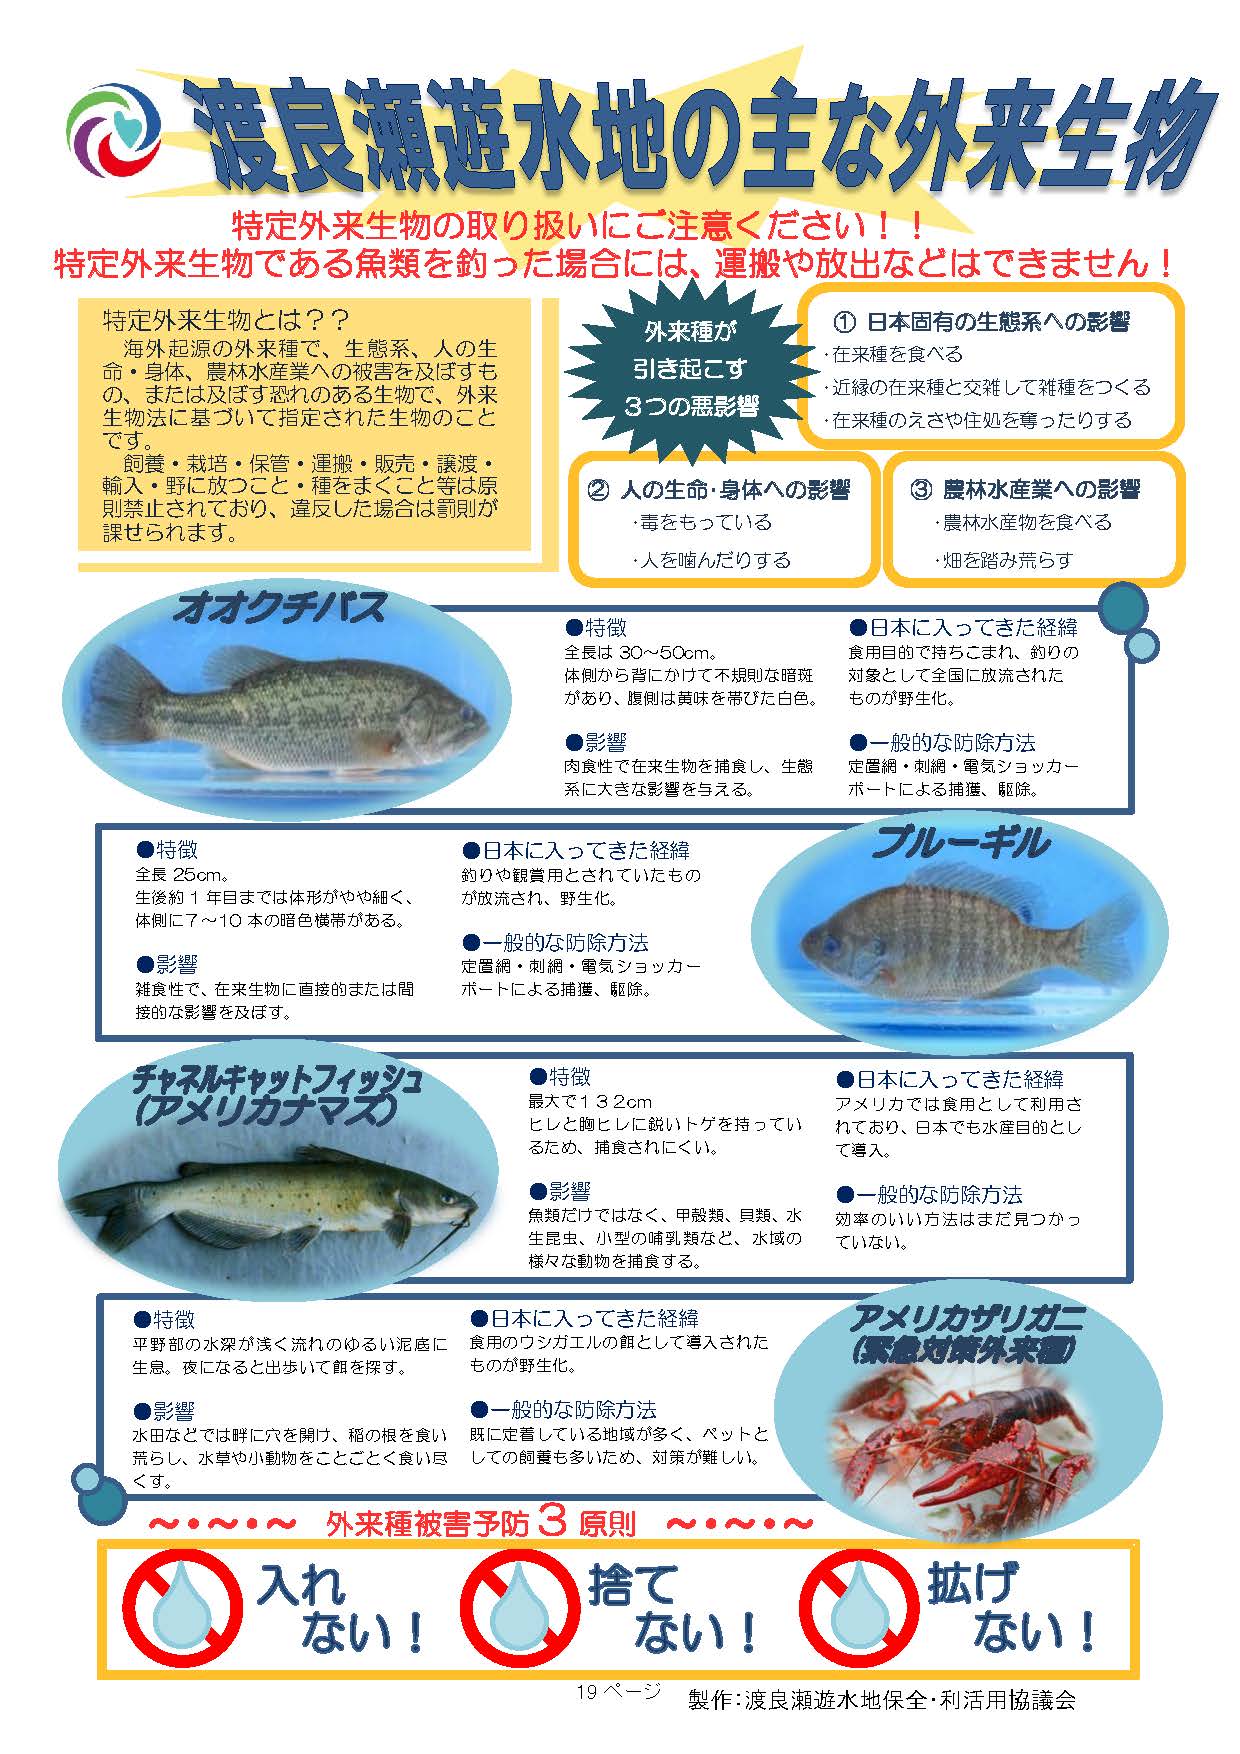 渡良瀬遊水地の主な外来生物（魚類）